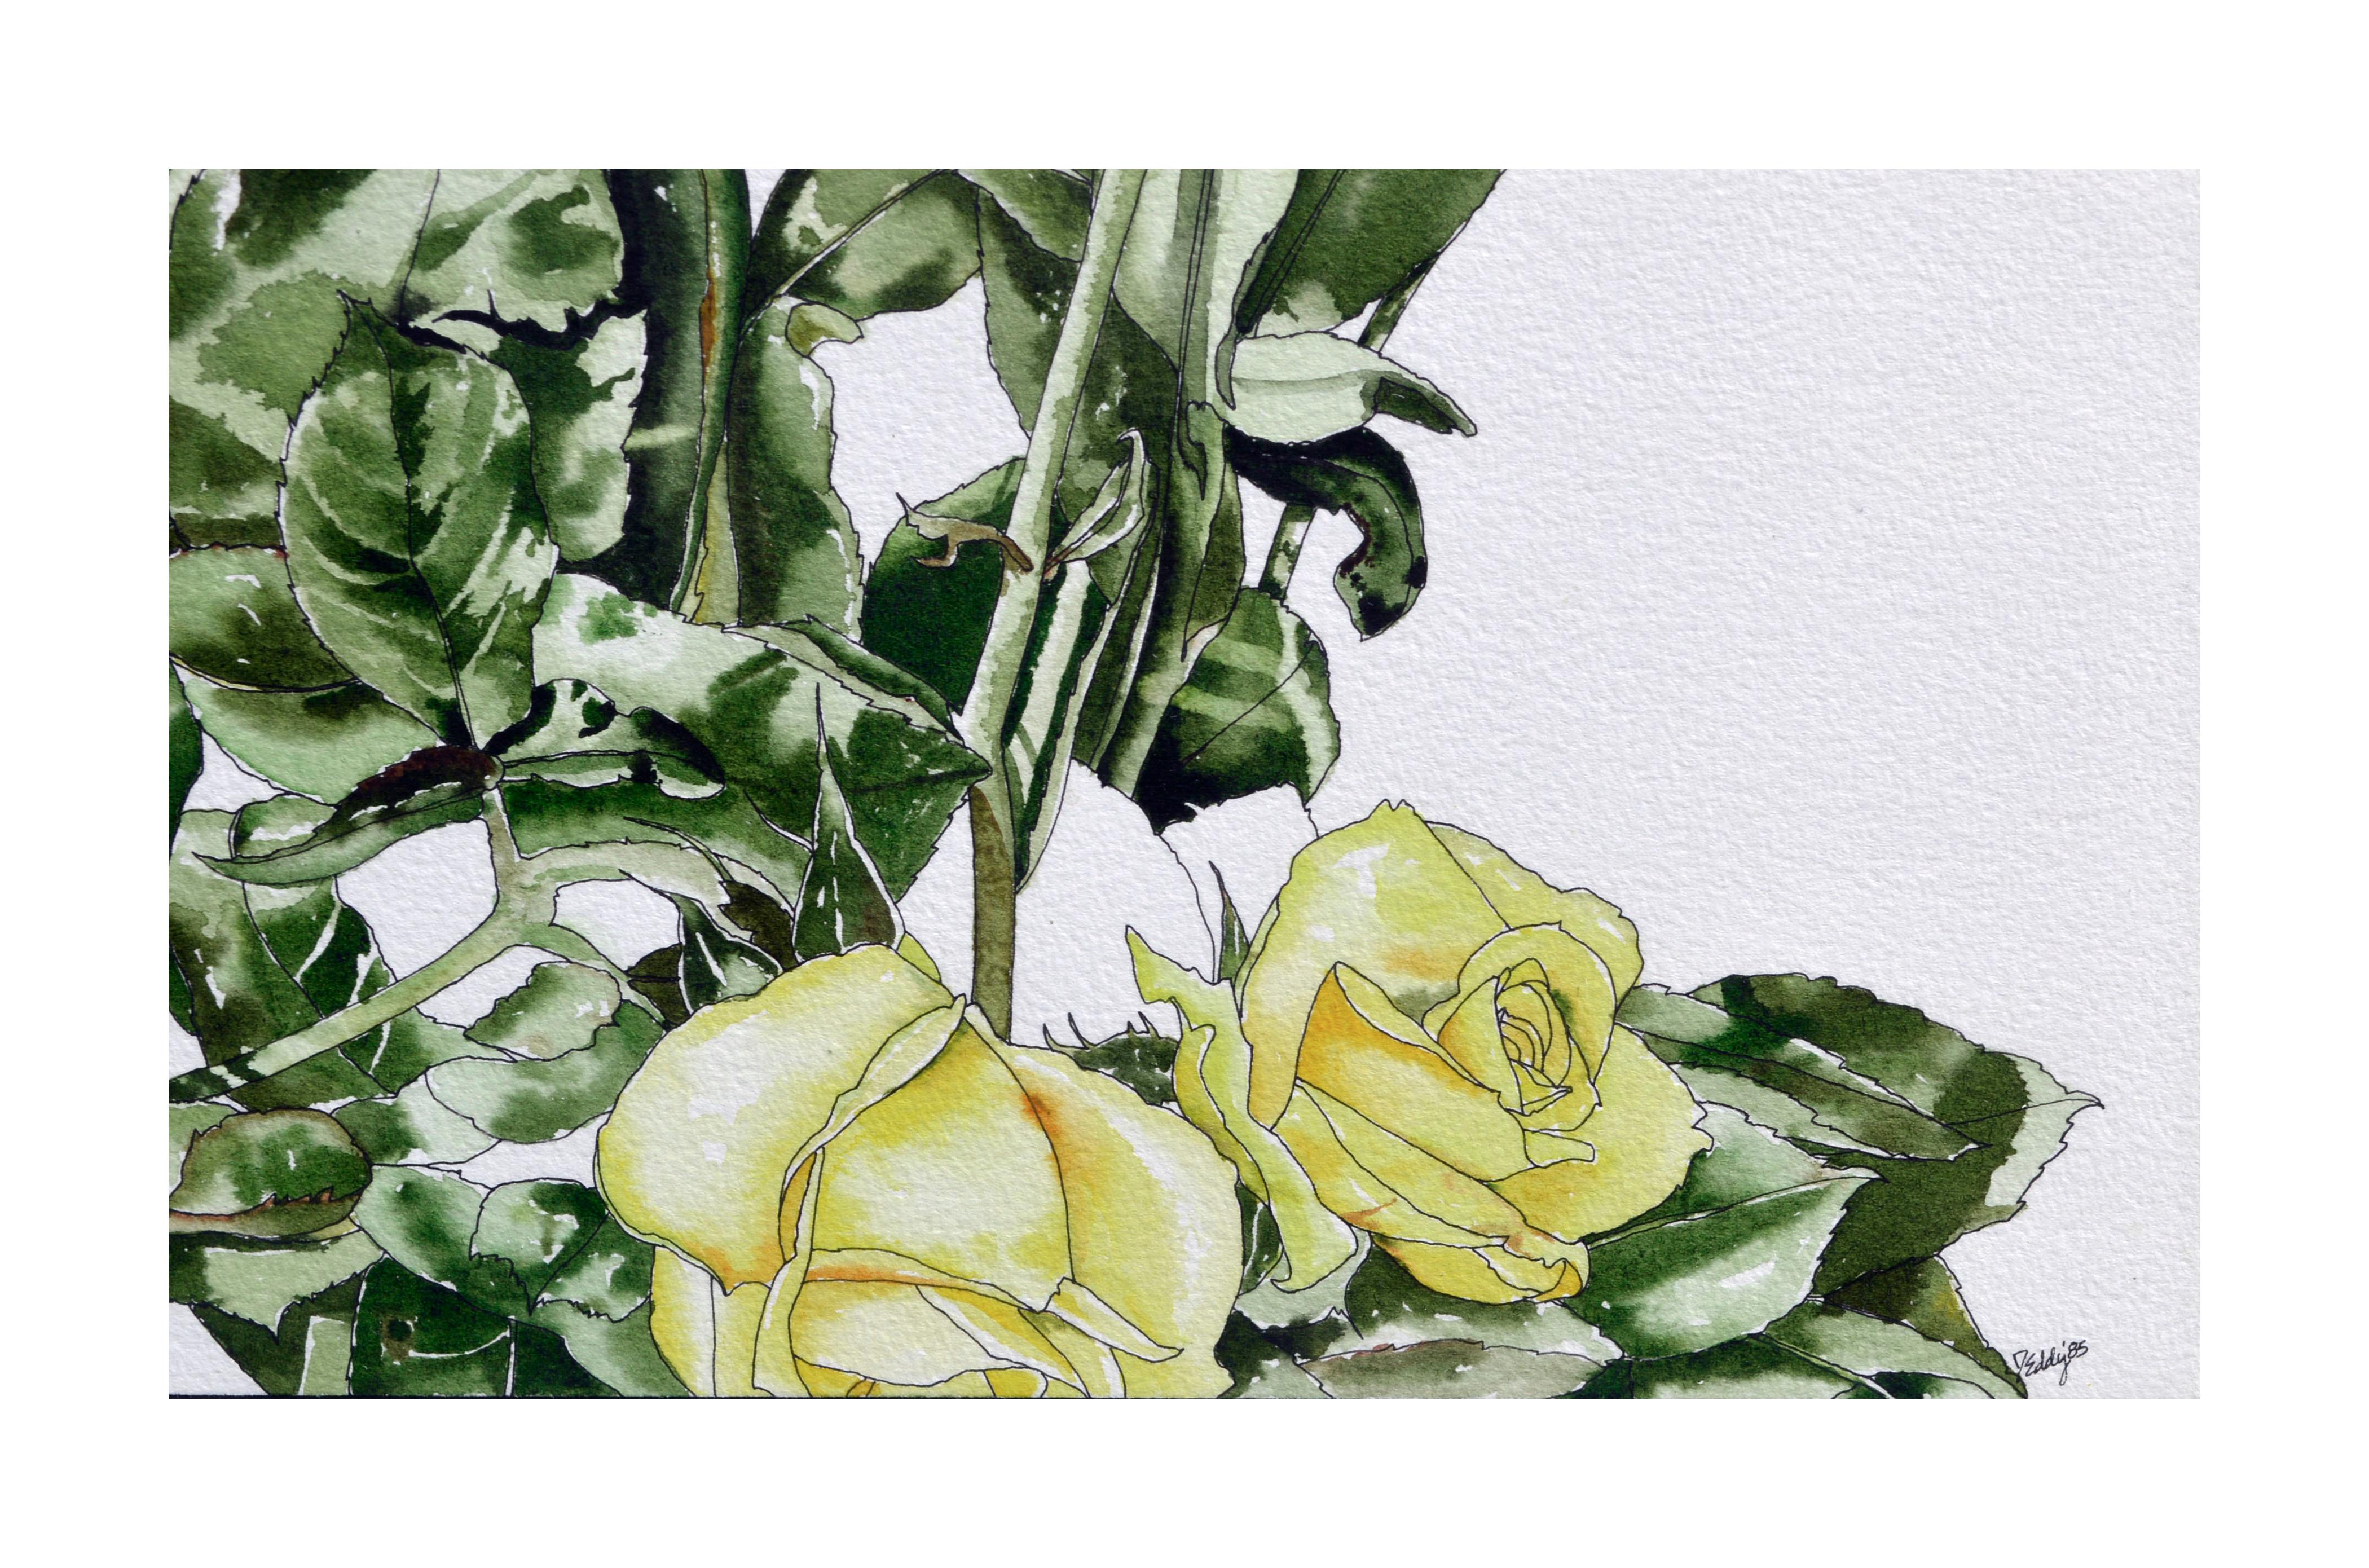 Gelbe gelbe Rosen – botanische Studie  (Amerikanischer Realismus), Art, von Deborah Eddy